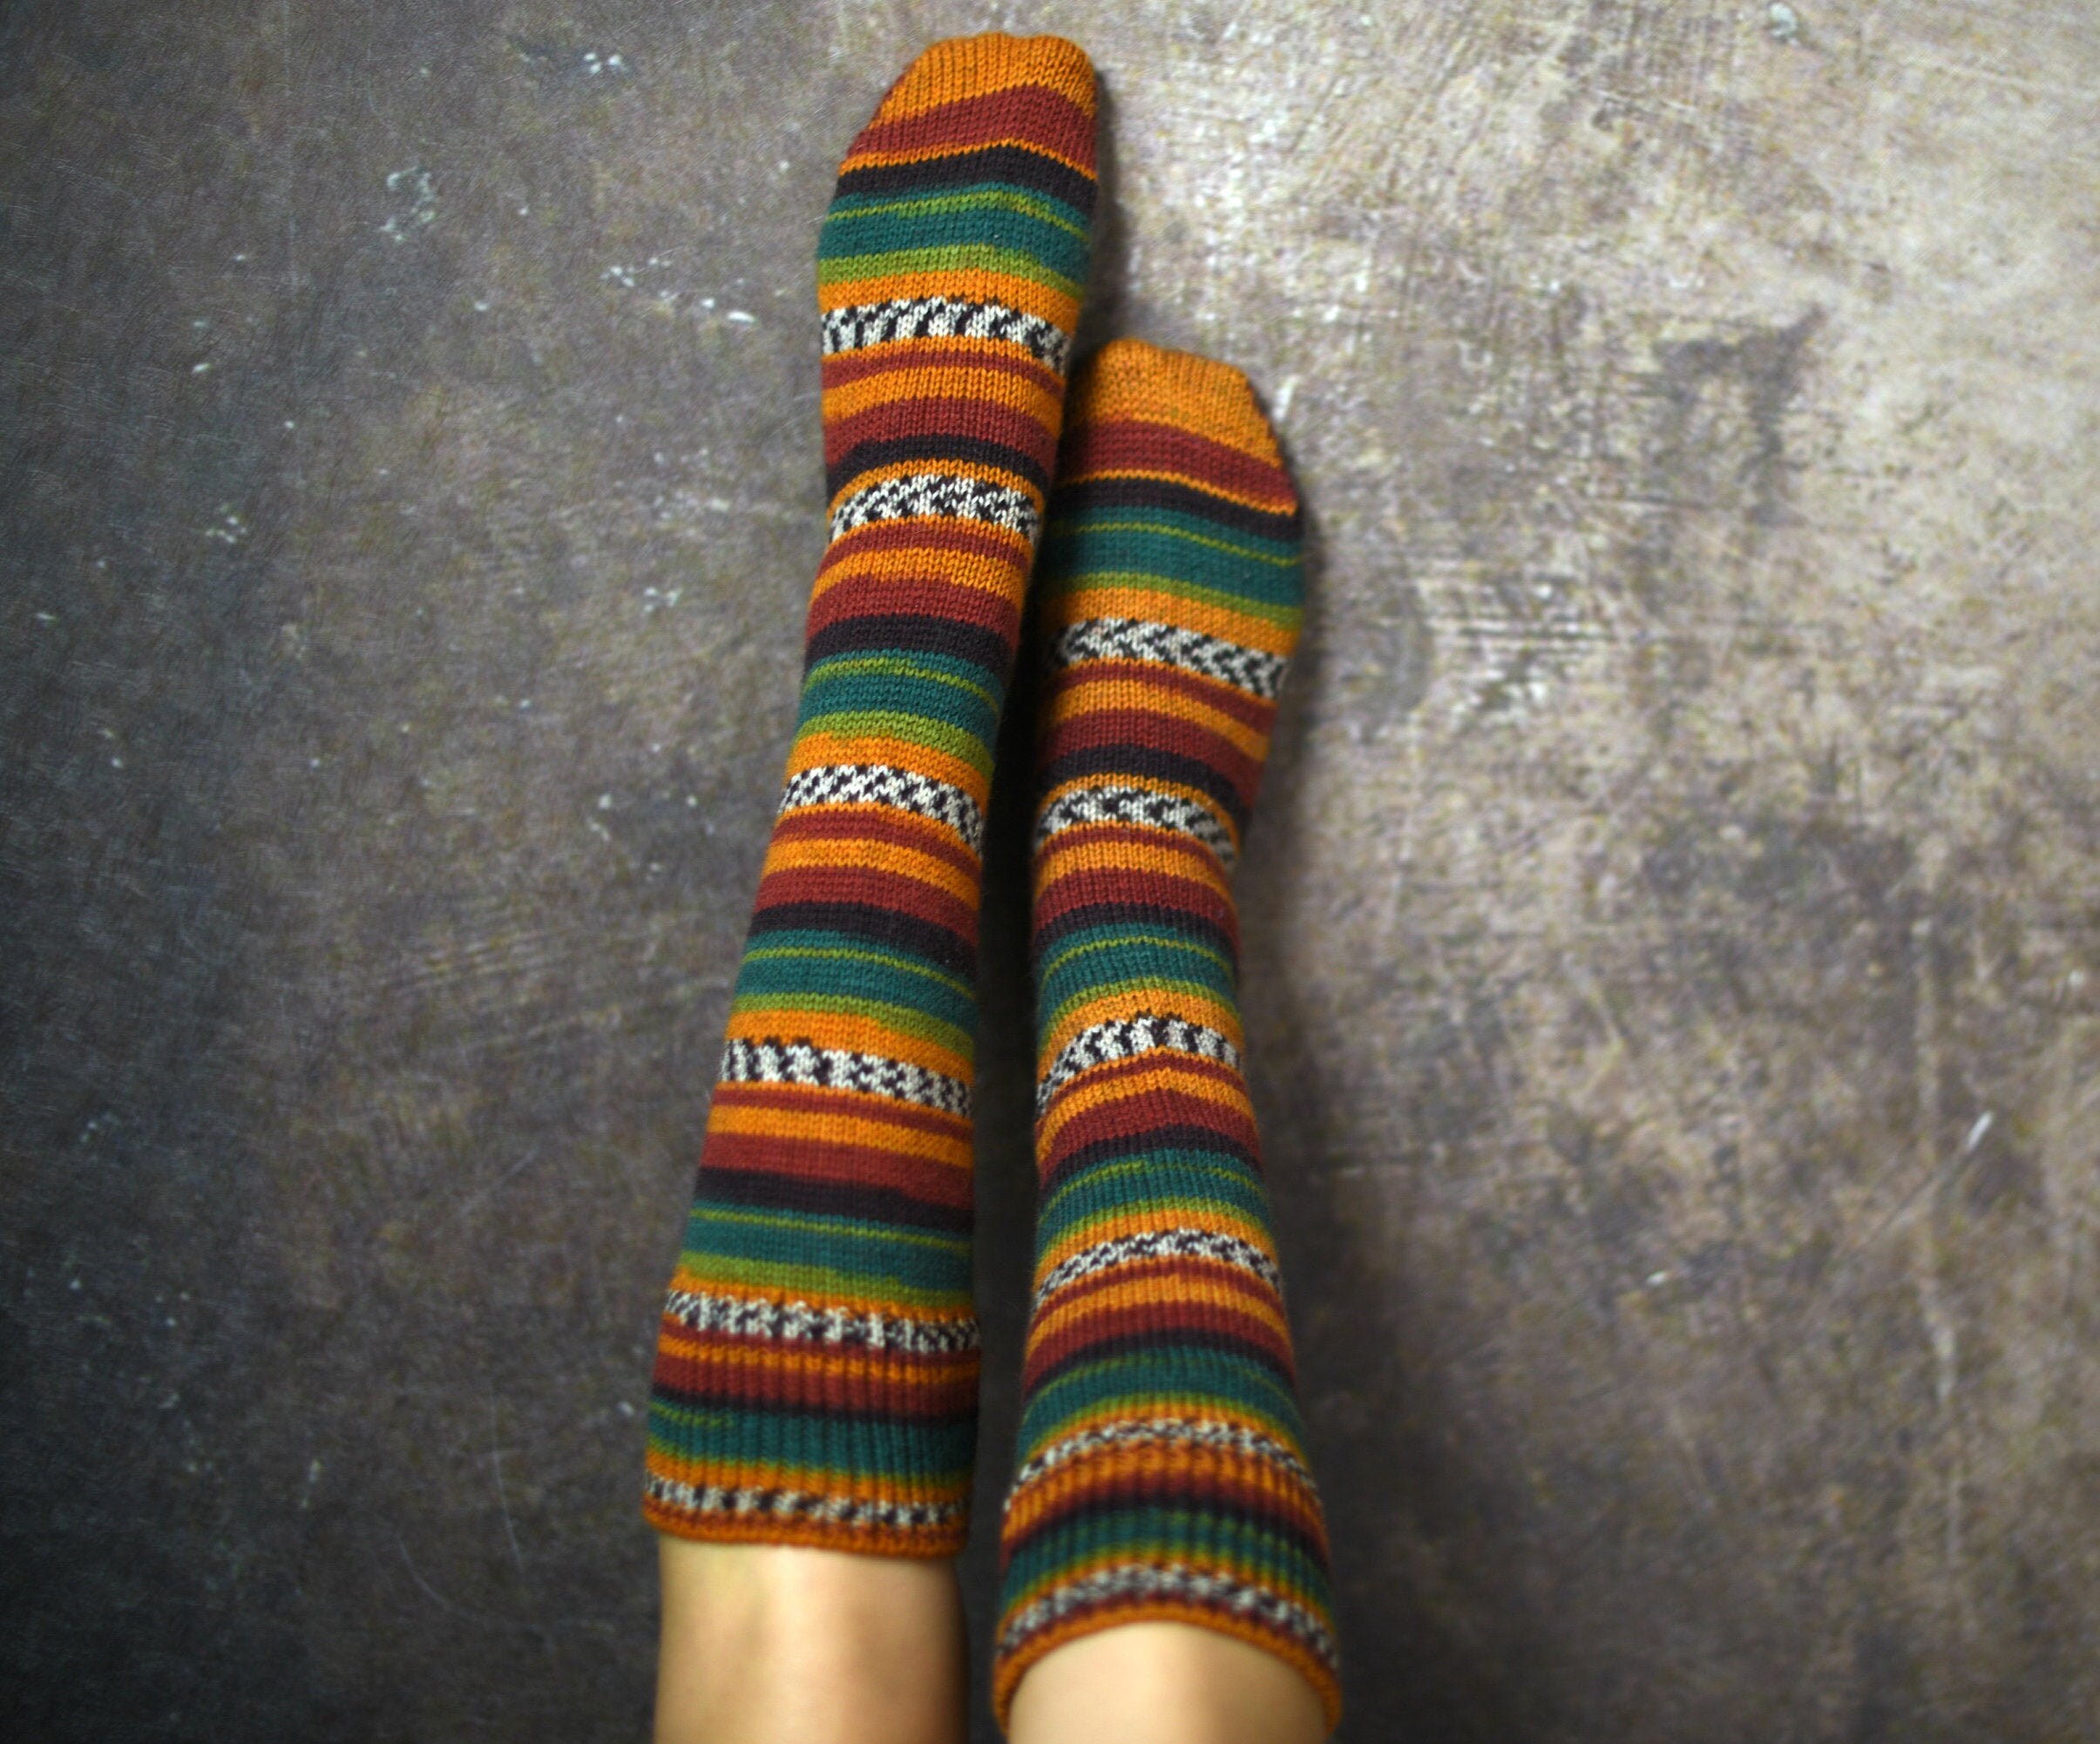 Knitted Knee Socks For Best Friend Gift, Wool Leg Warmers Gift Wife, Striped Customized Socks, Hand Knit Women